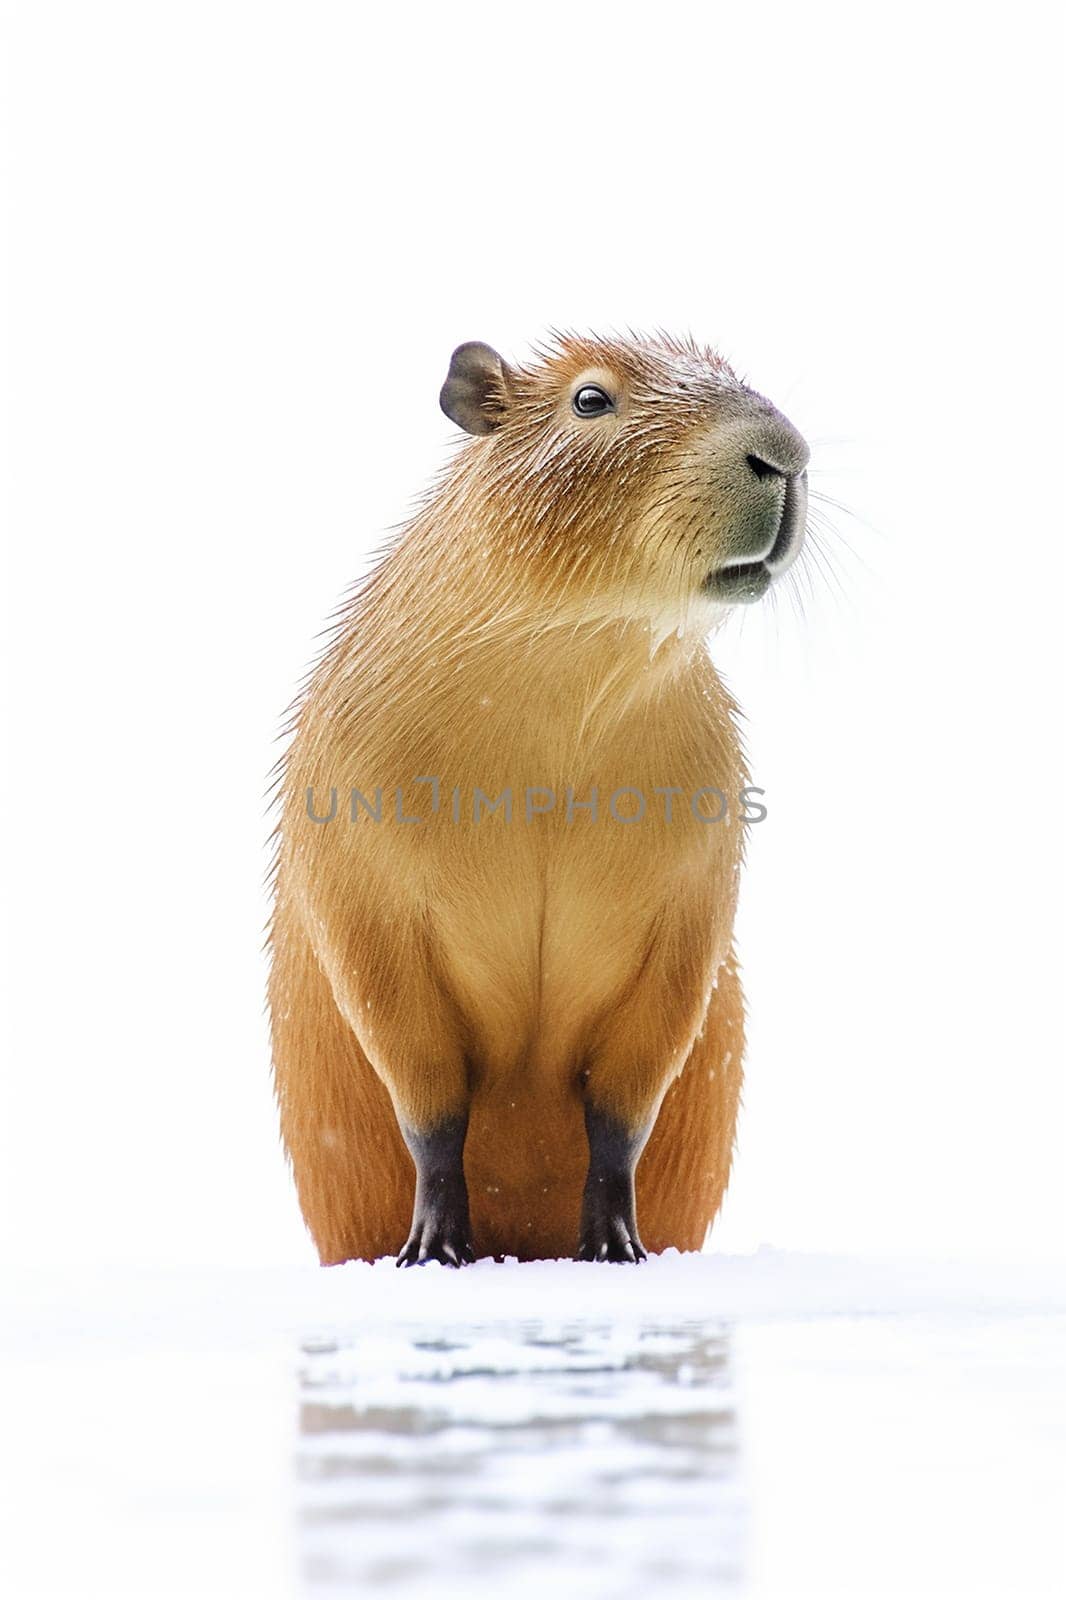 A capybara against a white background